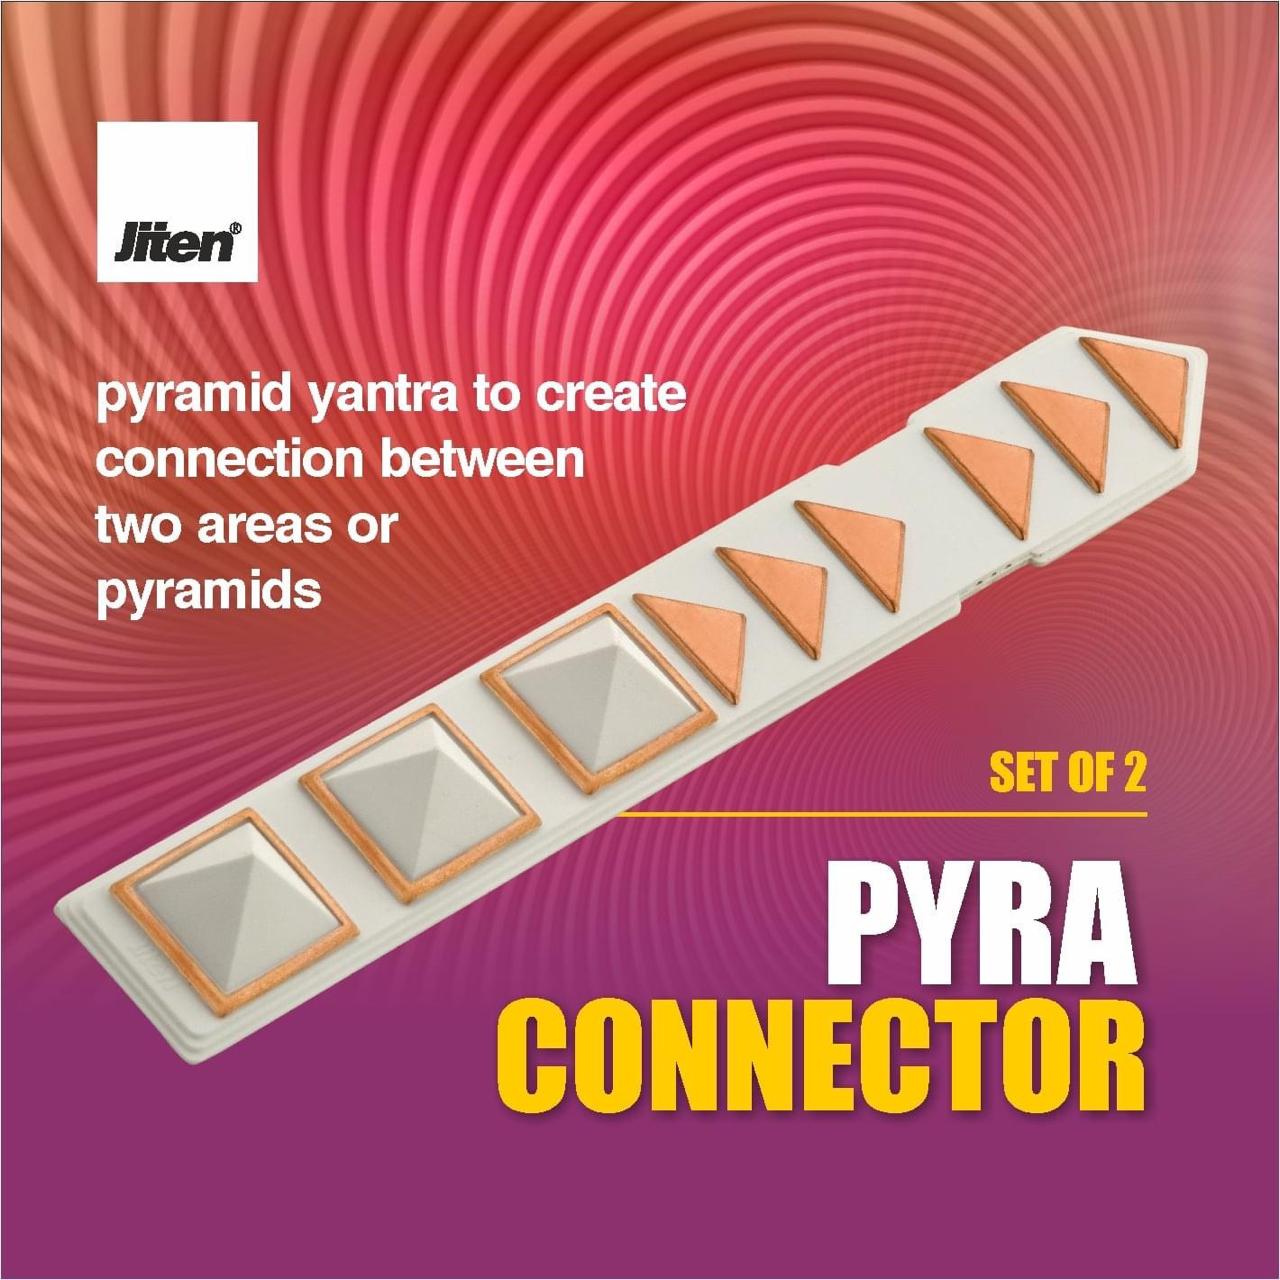 Pyra Connector